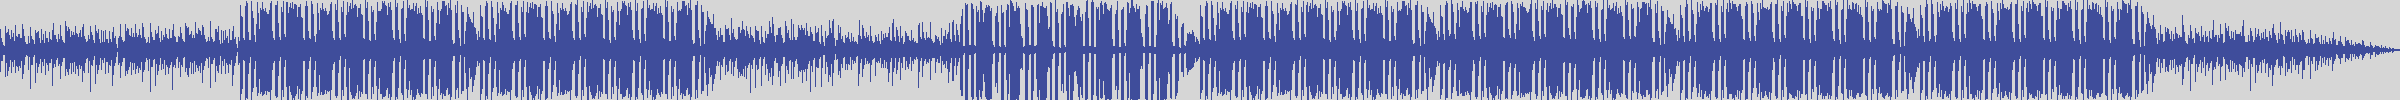 noclouds_chillout [NOC118] Ron Sander - True Lies [Intense Mix] audio wave form